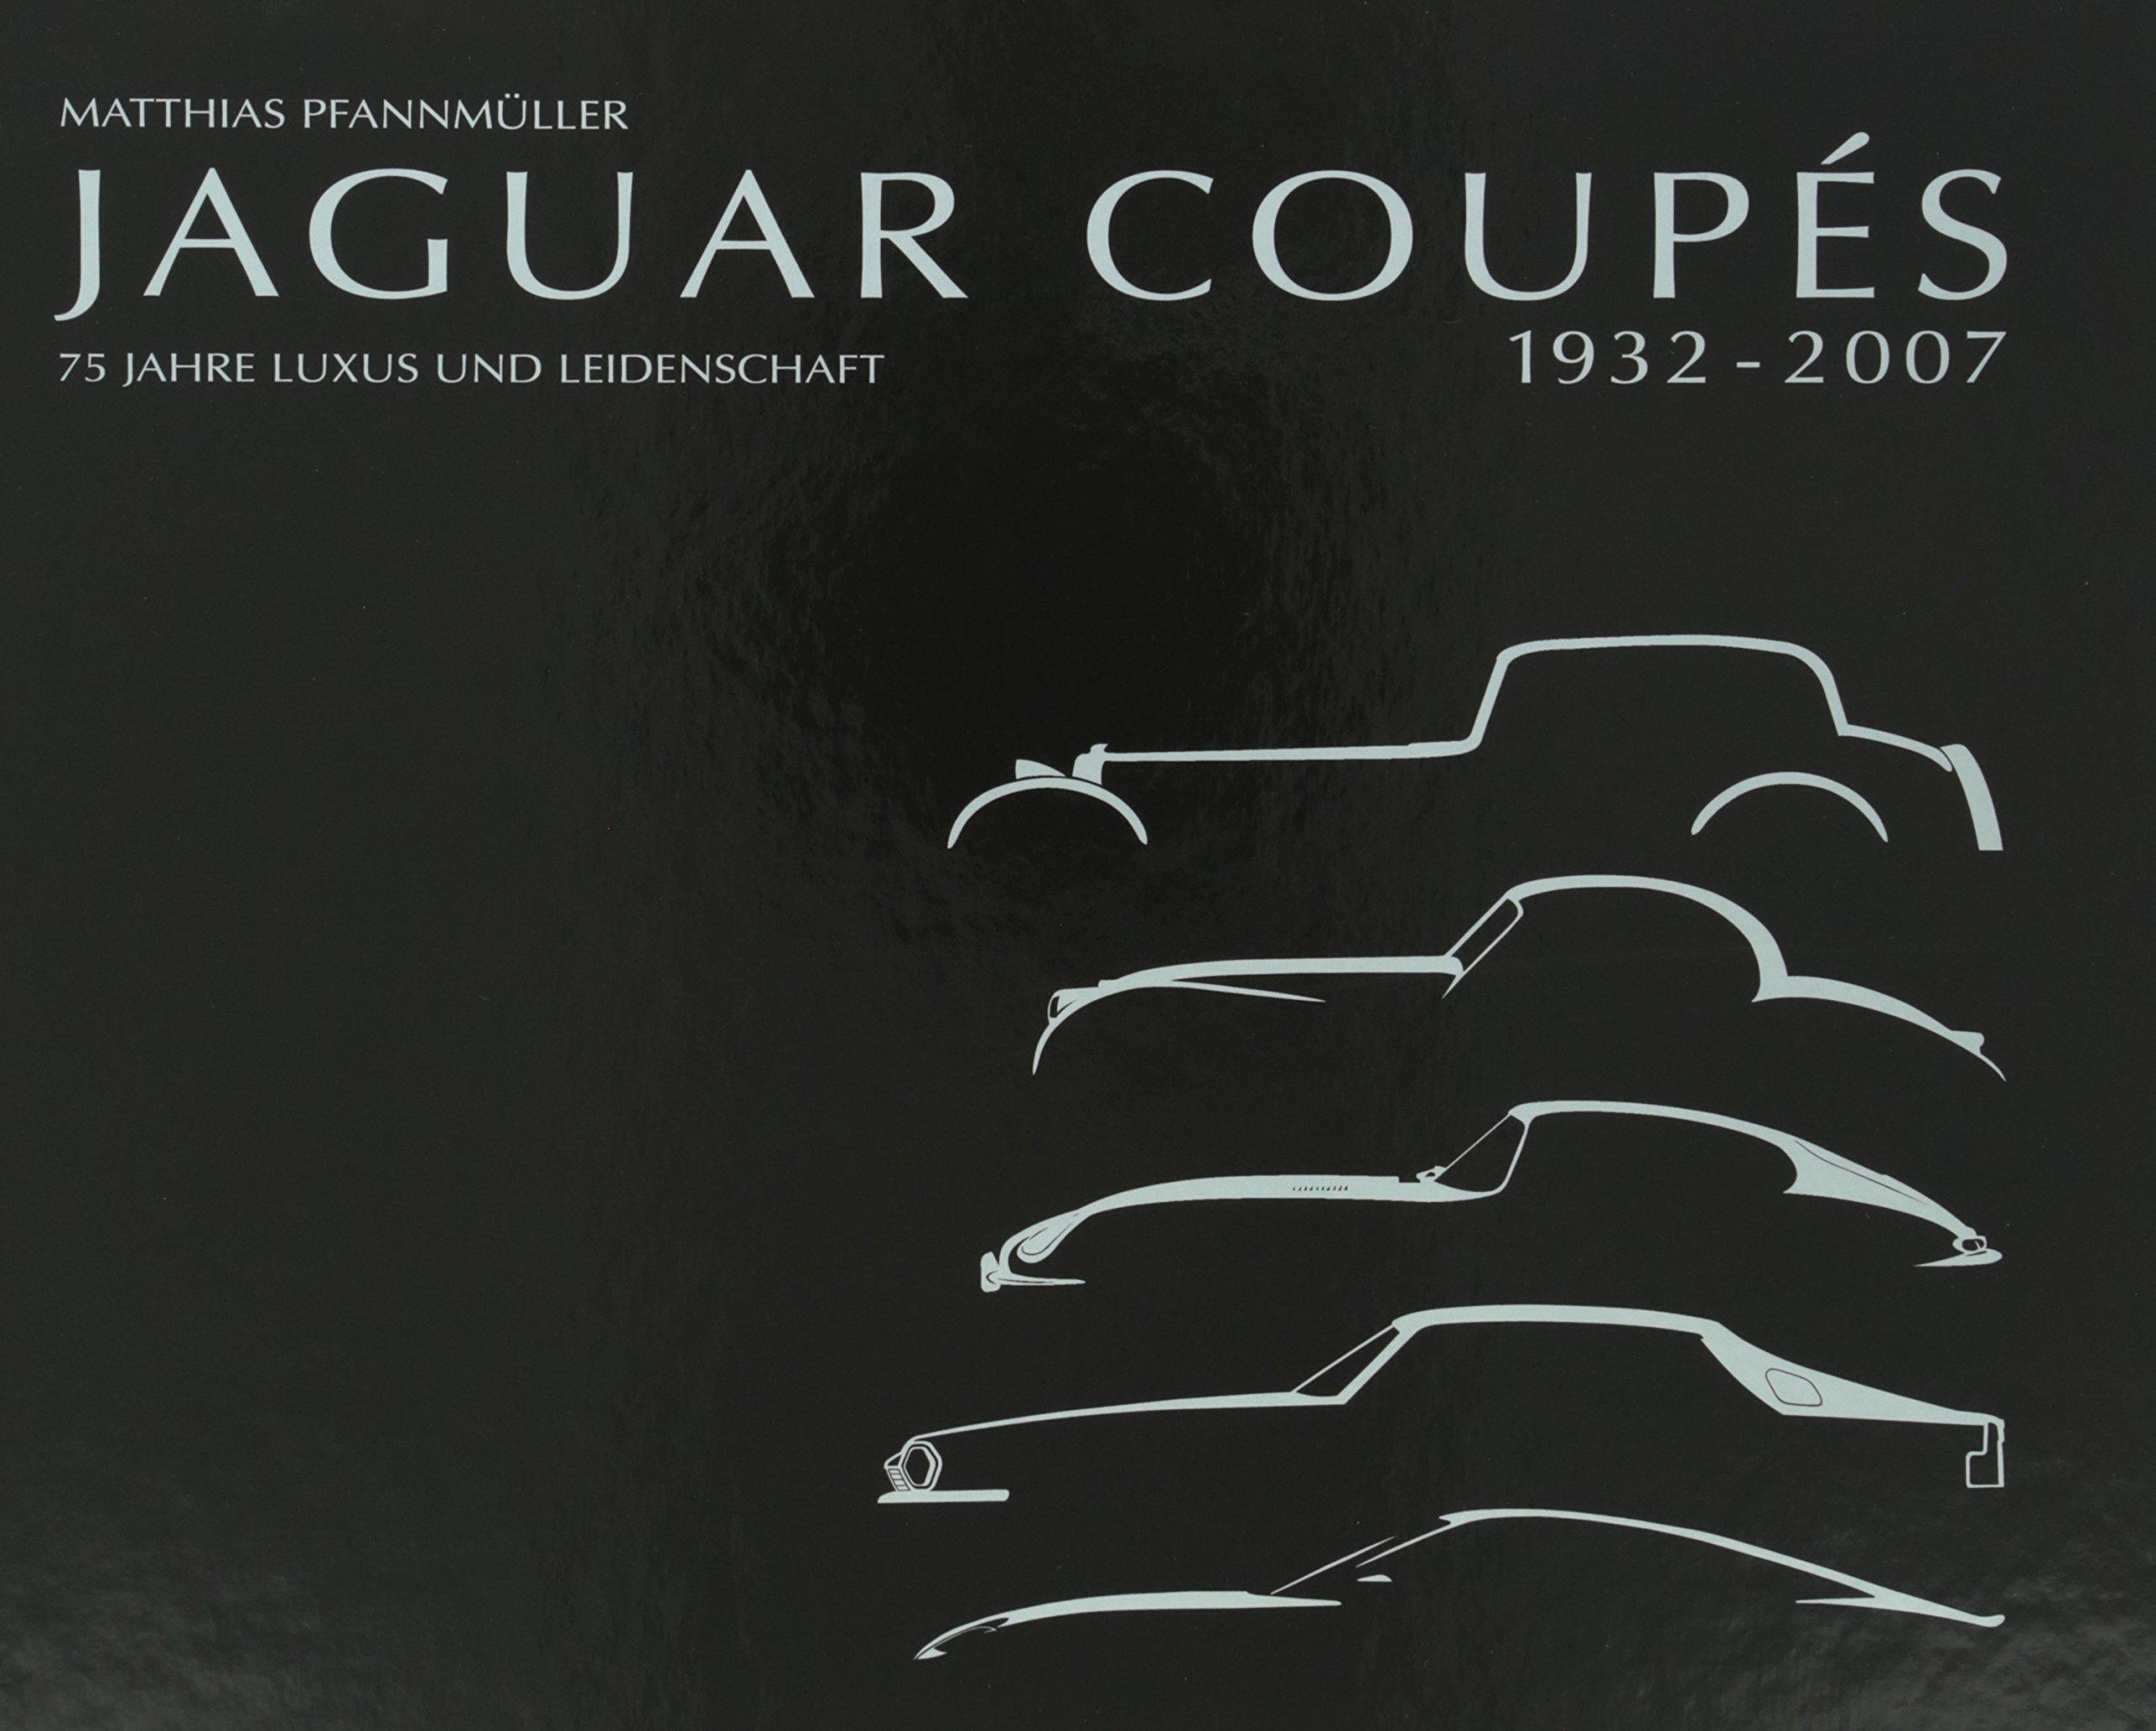 Jaguar Coupes 1932-2007: 75 Jahre Luxus und Leidenschaft